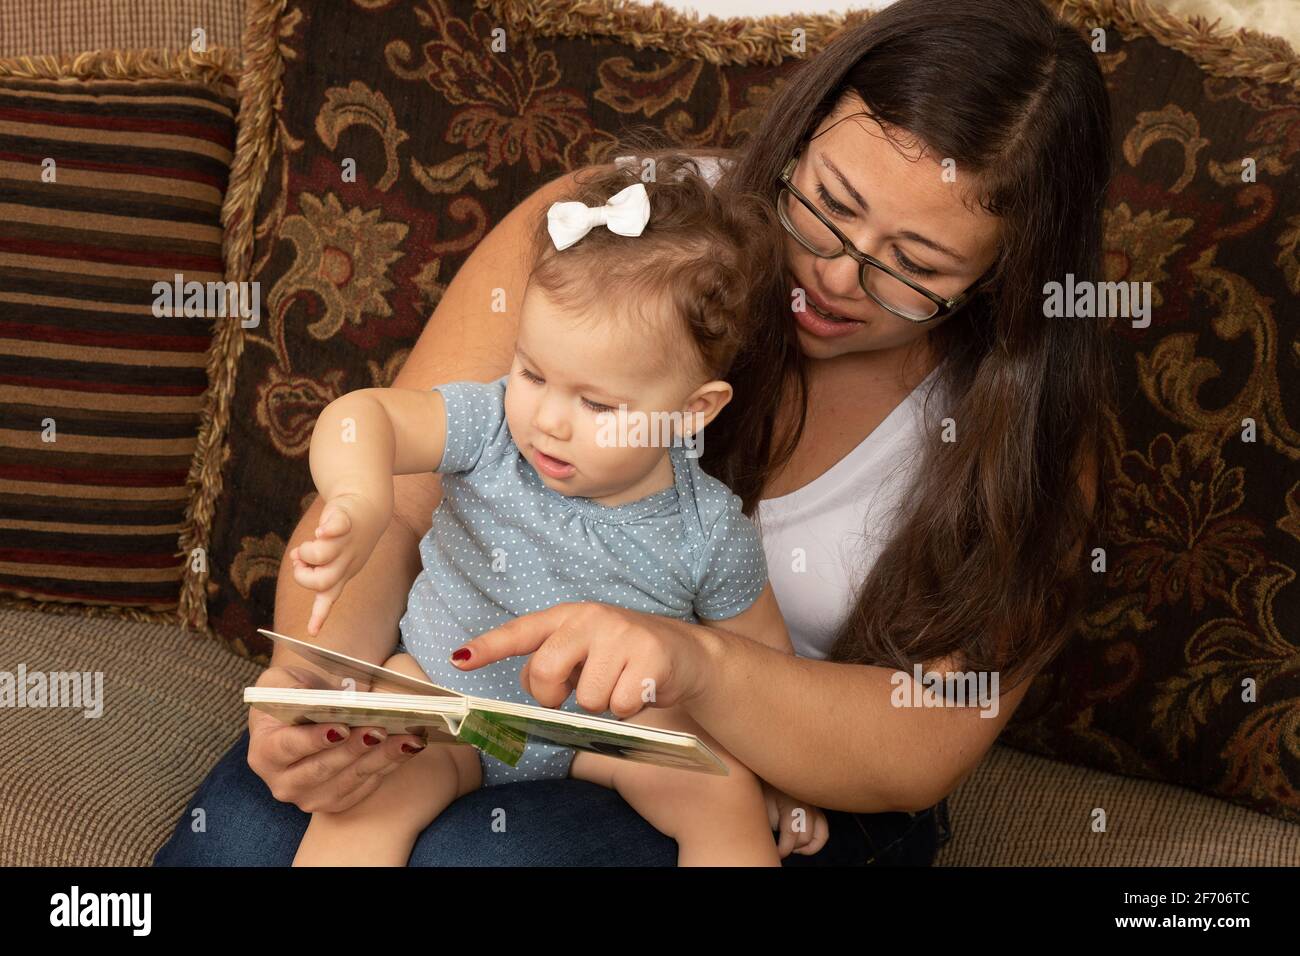 bébé fille de 7 mois lu par la mère, bby pointant vers le livre Banque D'Images